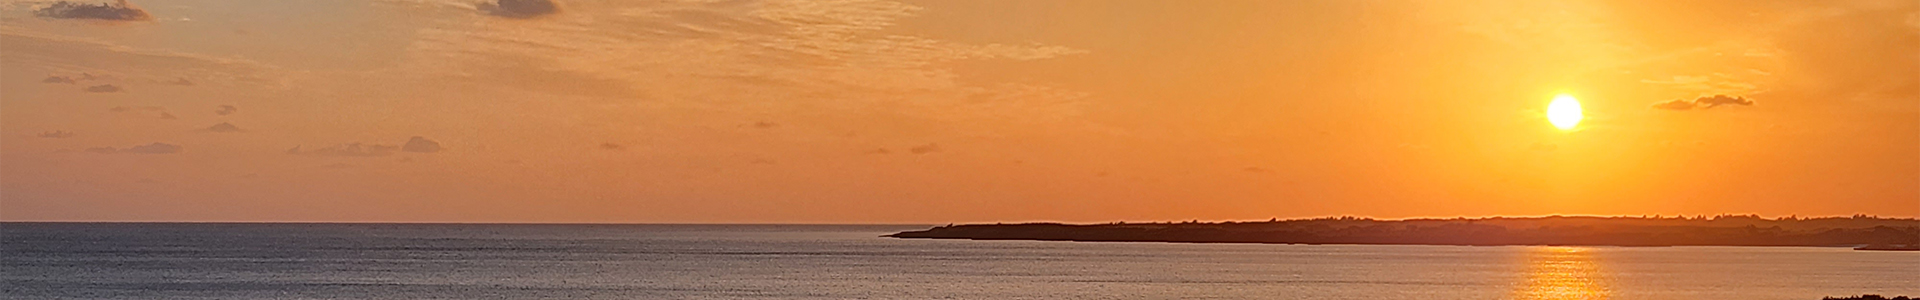 アルカディアリゾート宮古島から見える夕日